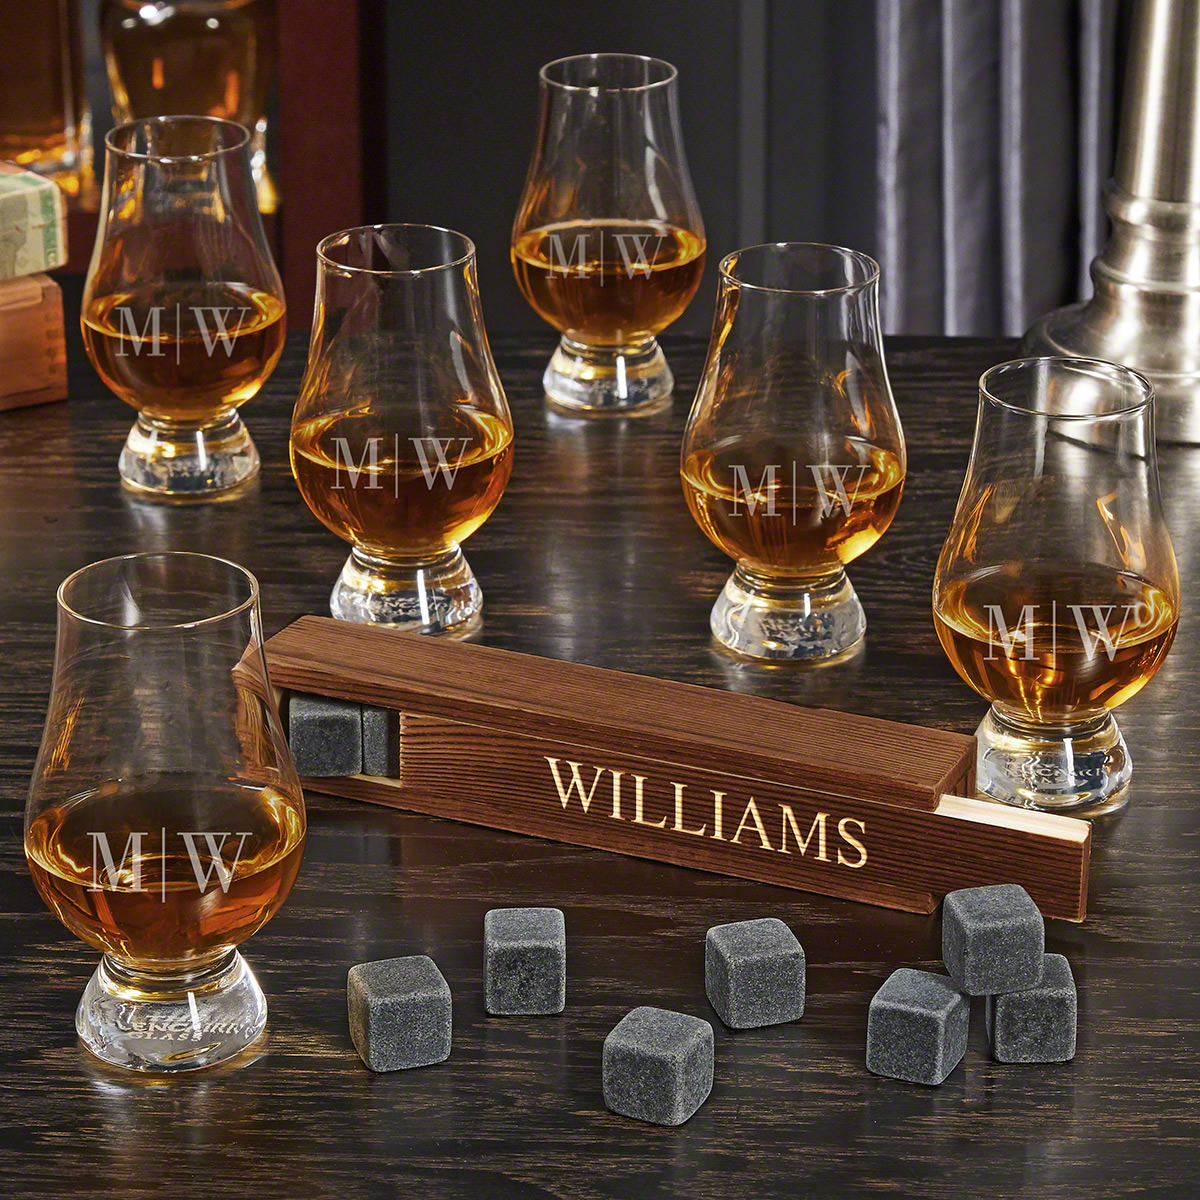 Quinton Custom Whiskey Stone Set with 6 Glencairn Whiskey Tasting Glasses